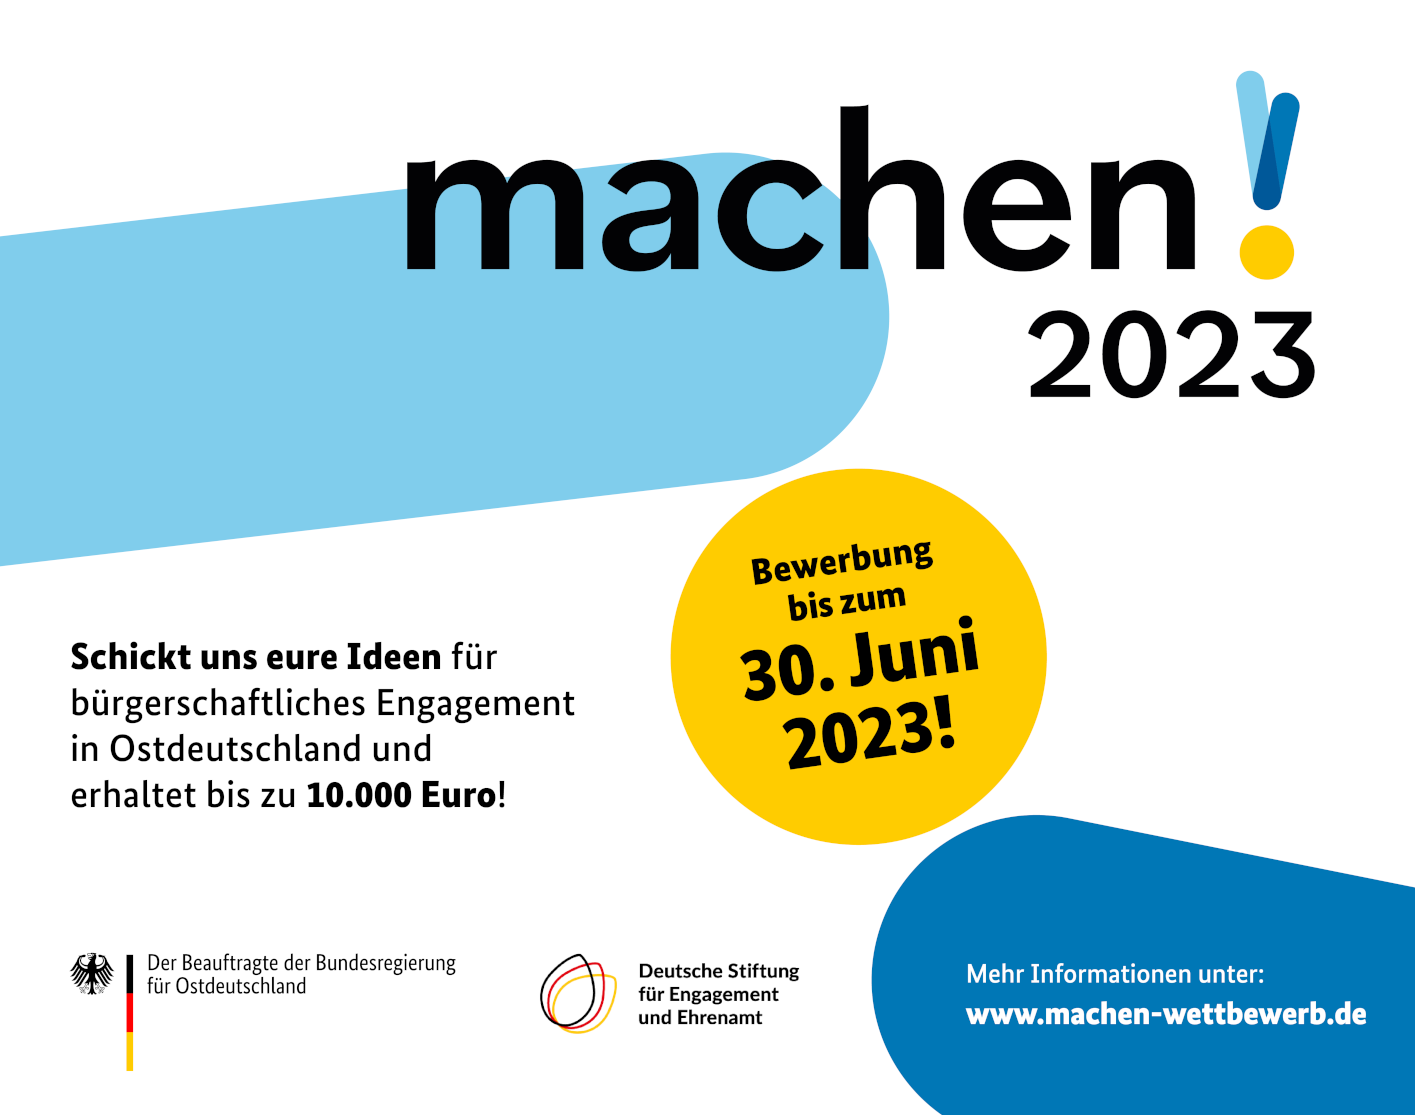 MACHEN!2023: Engagement-Wettbewerb für Ostdeutschland